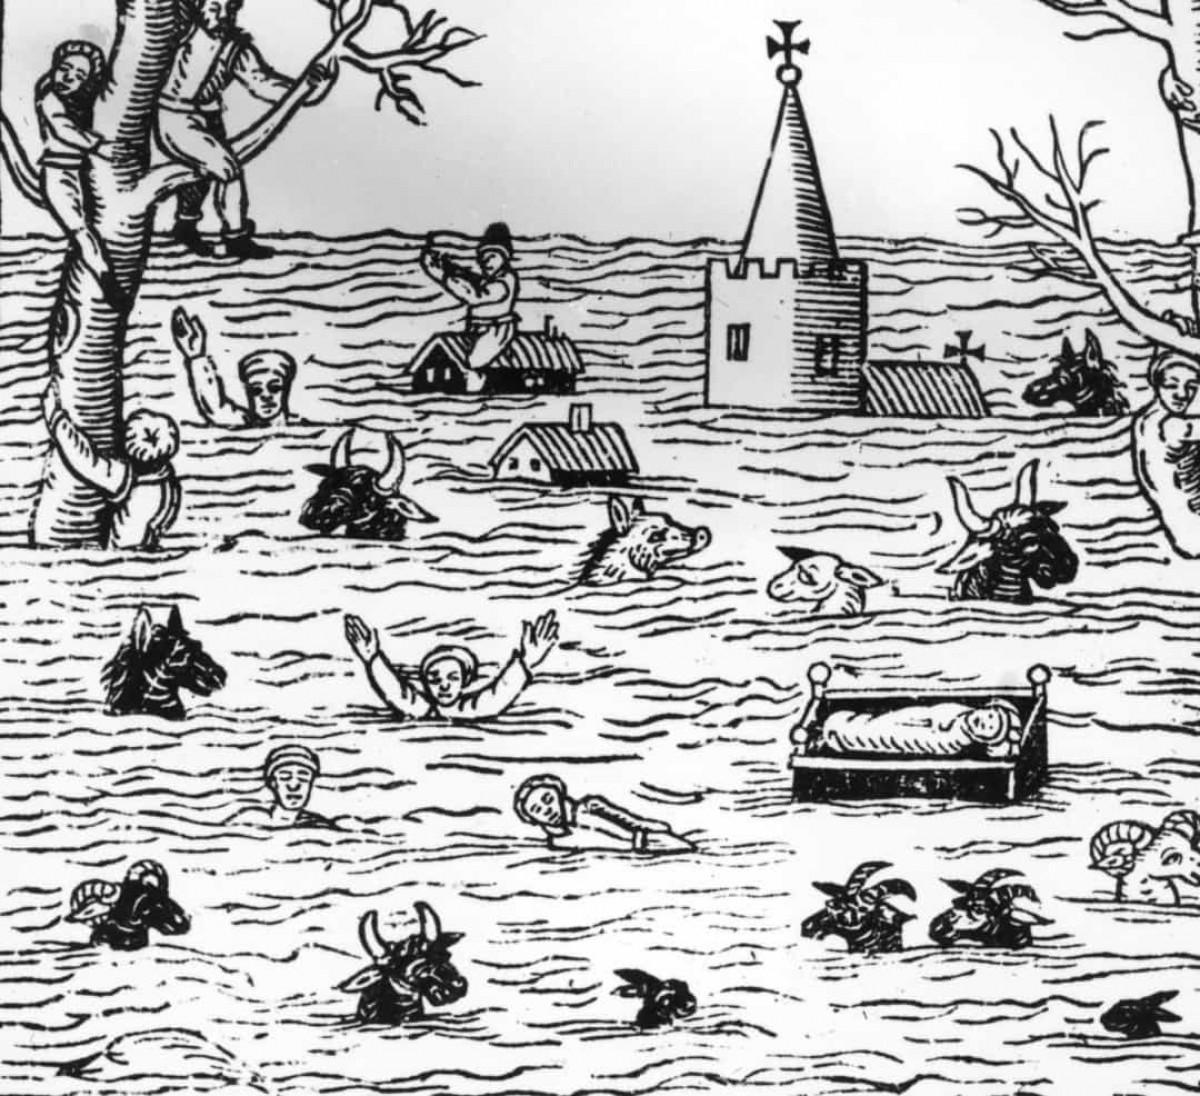 Trận lũ lụt ở kênh Bristol năm 1607. Năm 1607, một trận sóng thần đã ập vào thị trấn Burnham-on-Sea và kênh Bristol của Anh. Đây là một trong những thảm họa thiên nhiên tồi tệ nhất của Anh khi đã khiến 2.000 người thiệt mạng. 